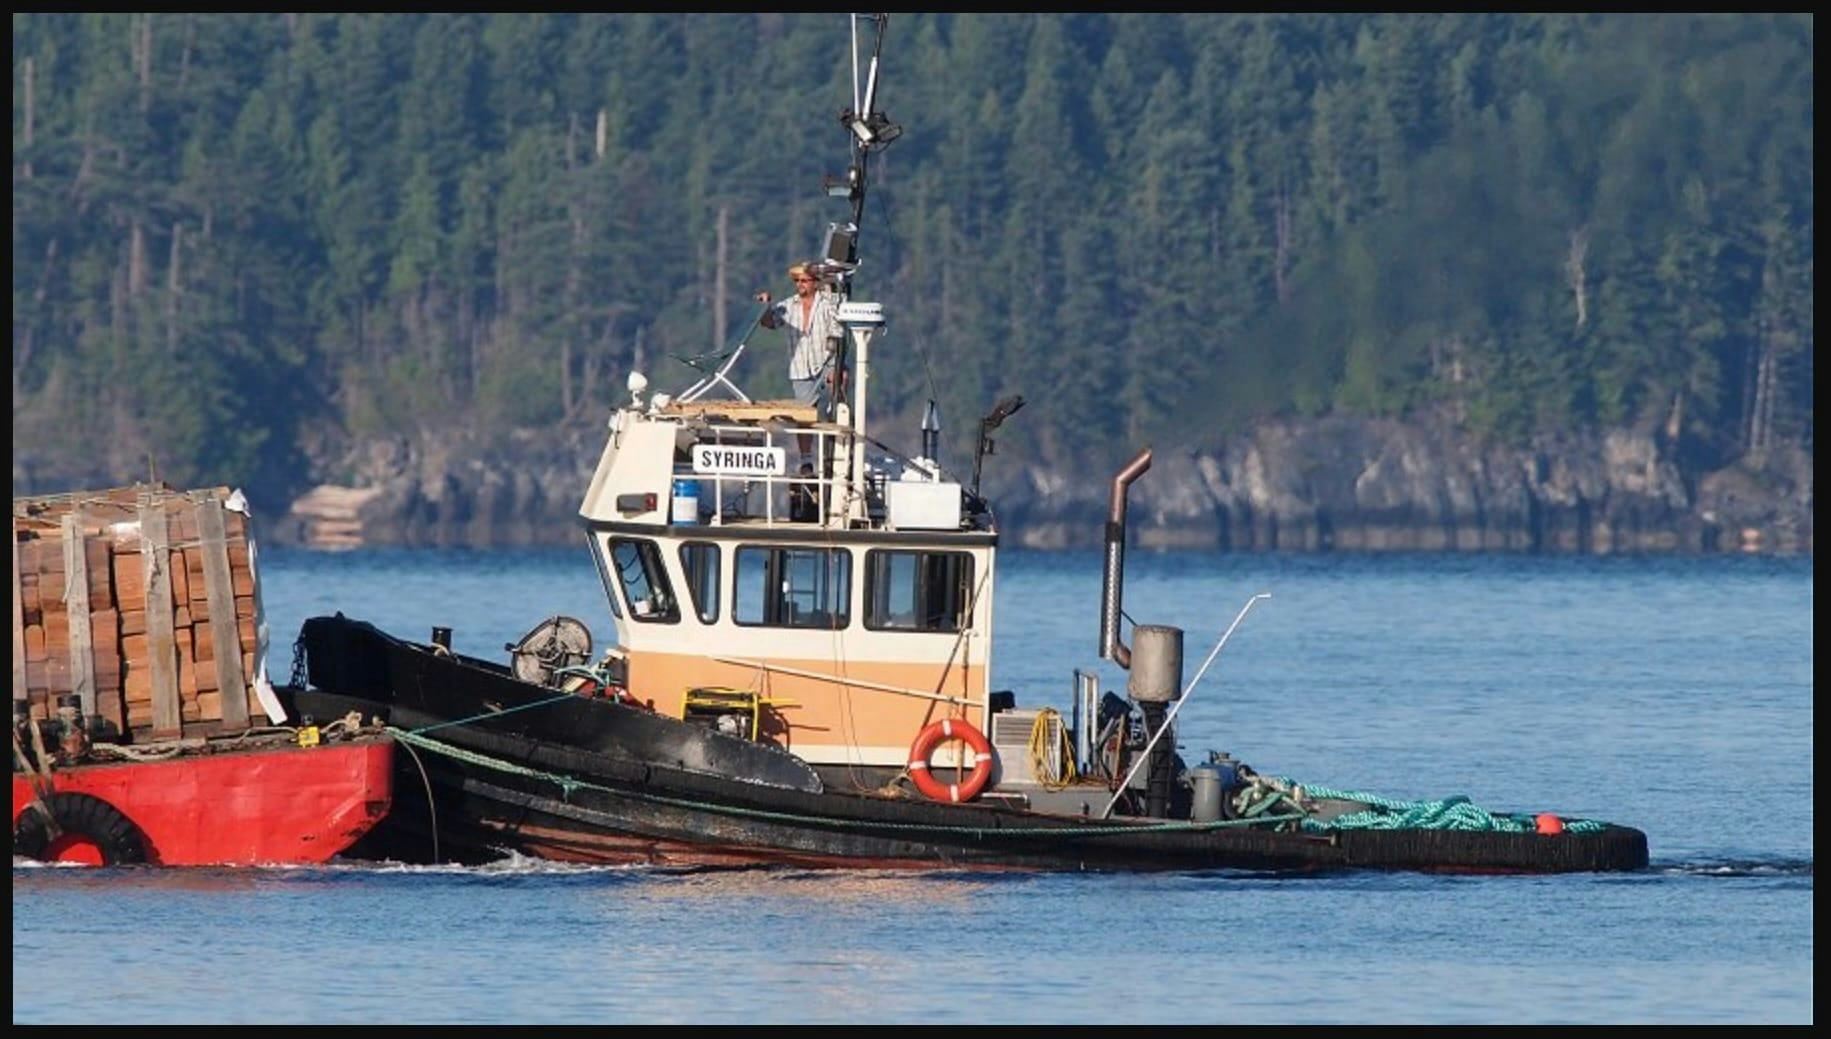 The Syringa tugboat, pushing a load of shake blocks, in B.C.'s Malaspina Strait, 2013.